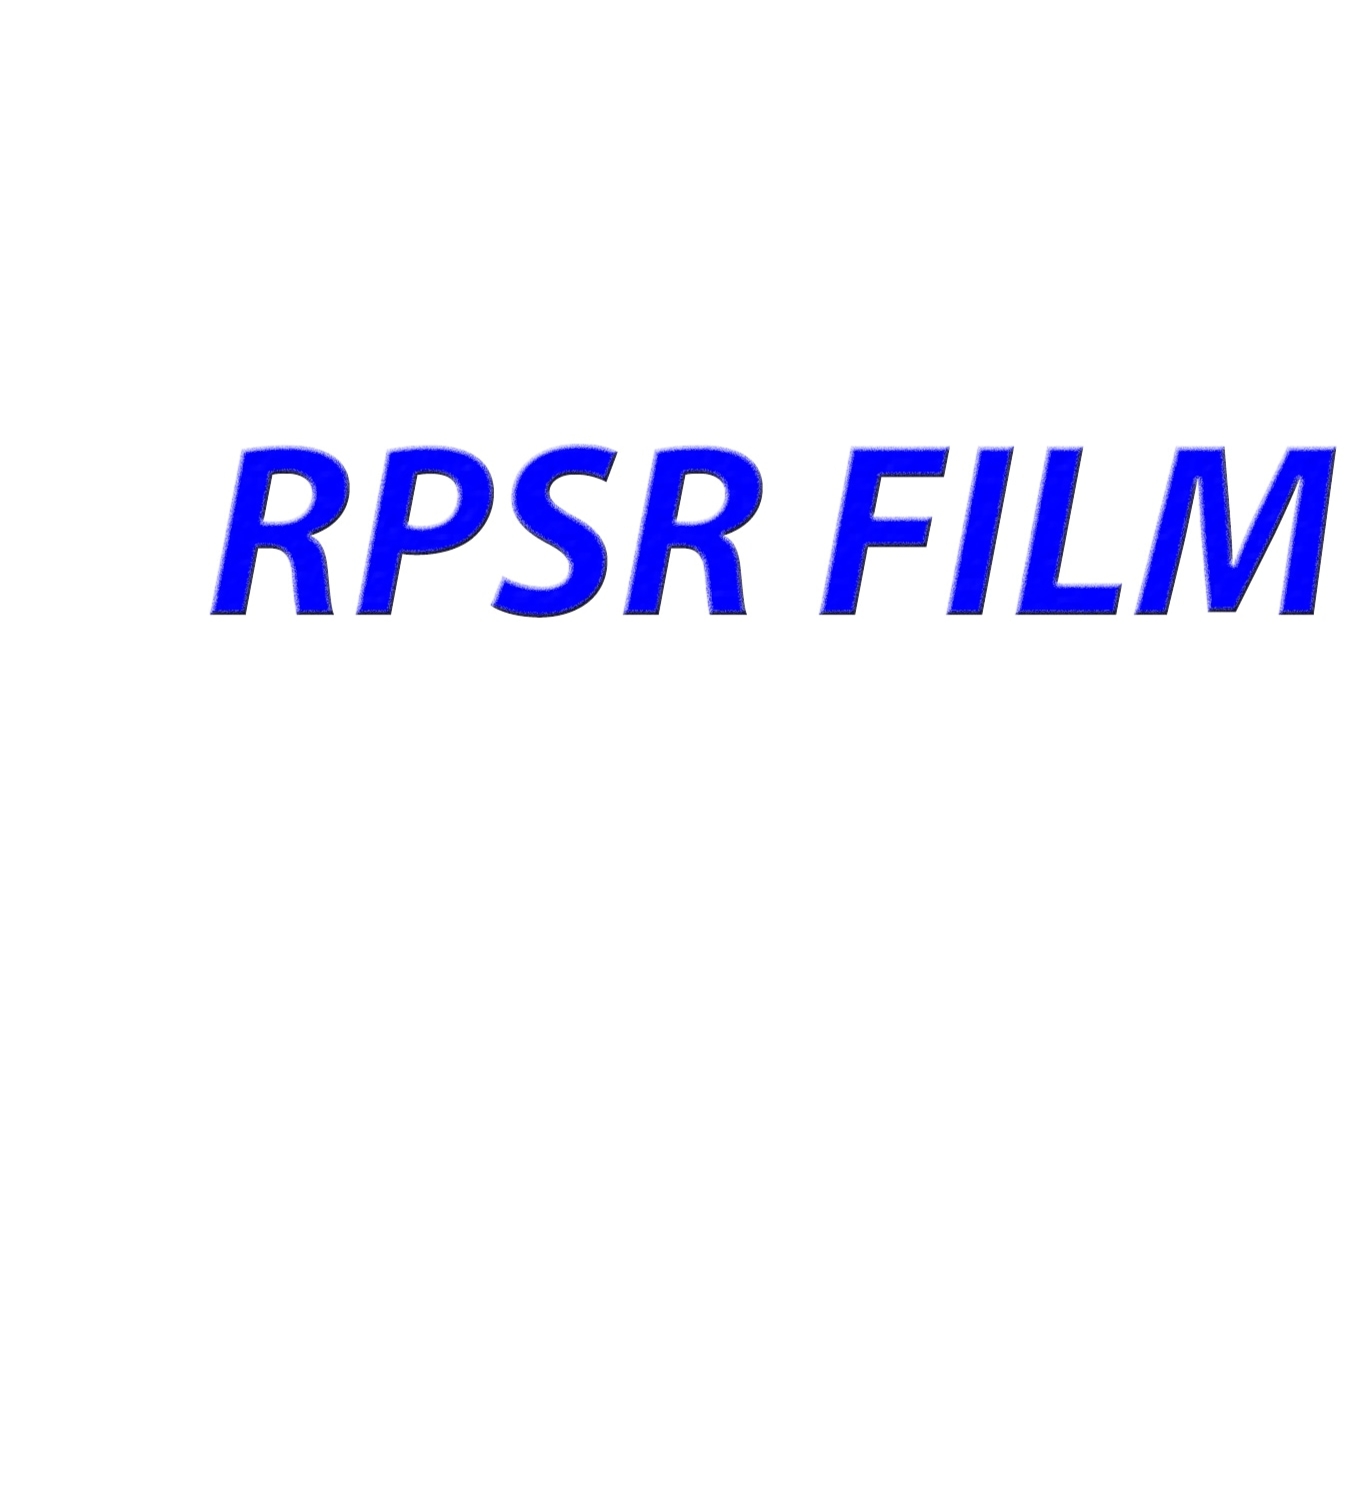 RPSR WEBSITE